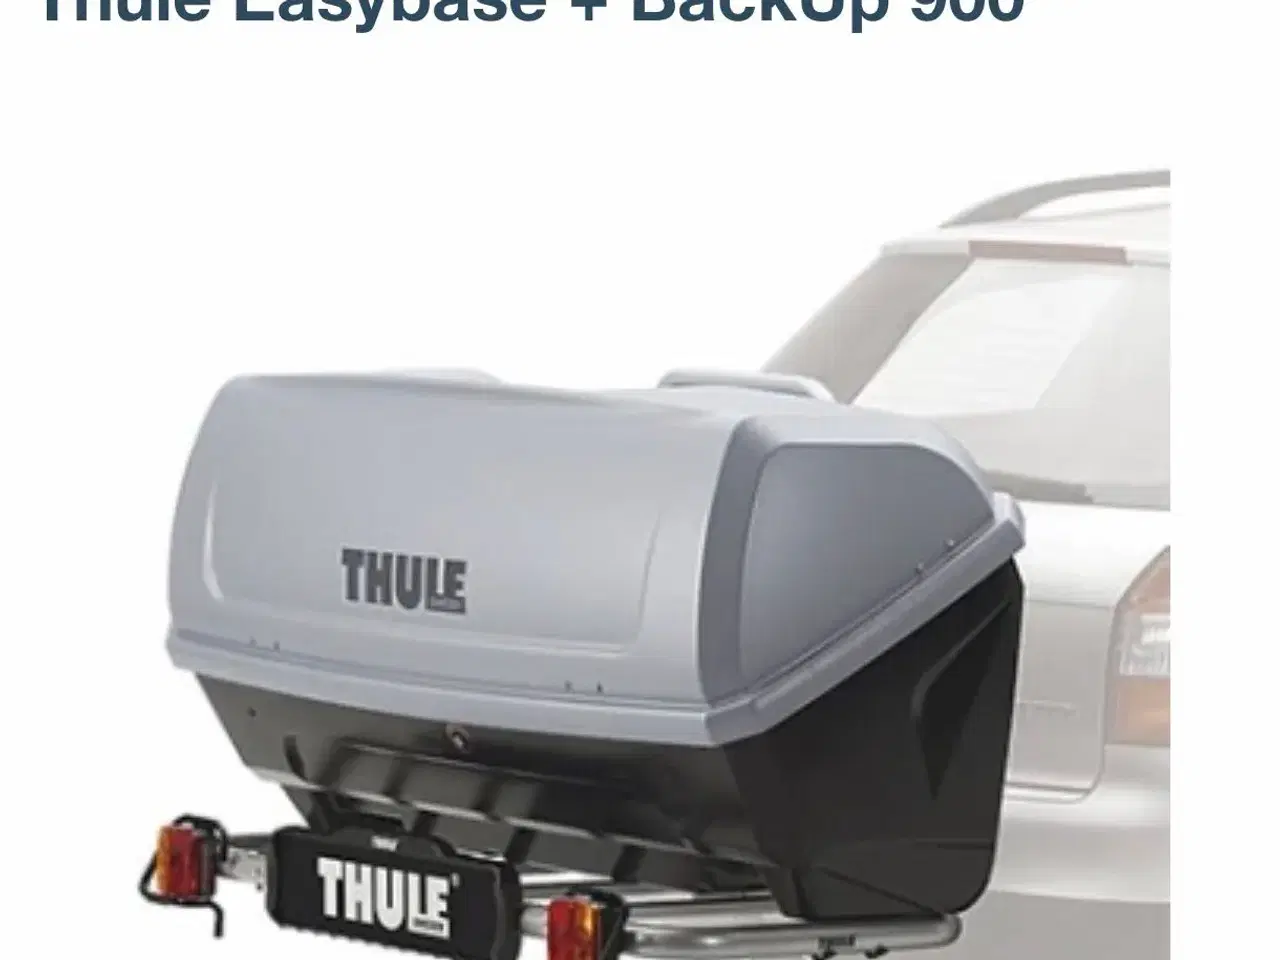 Billede 1 - Udlejning Thule easybase+backup 900